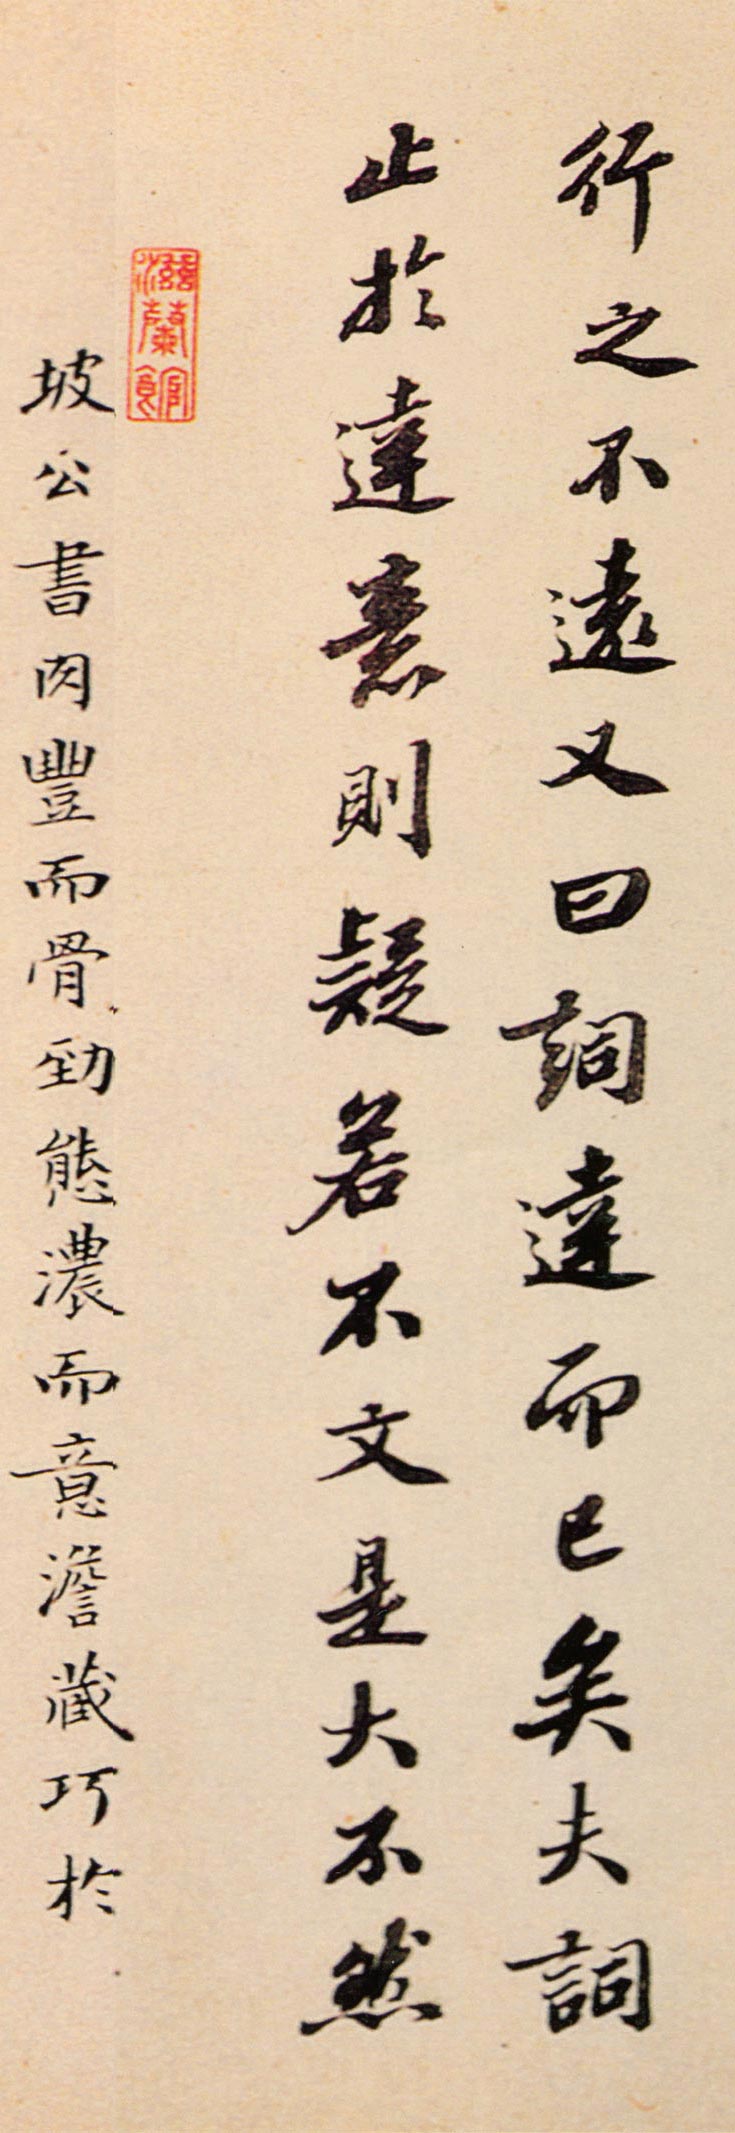 苏轼 《行书答谢民师论文帖卷》-上海博物馆藏(图15)